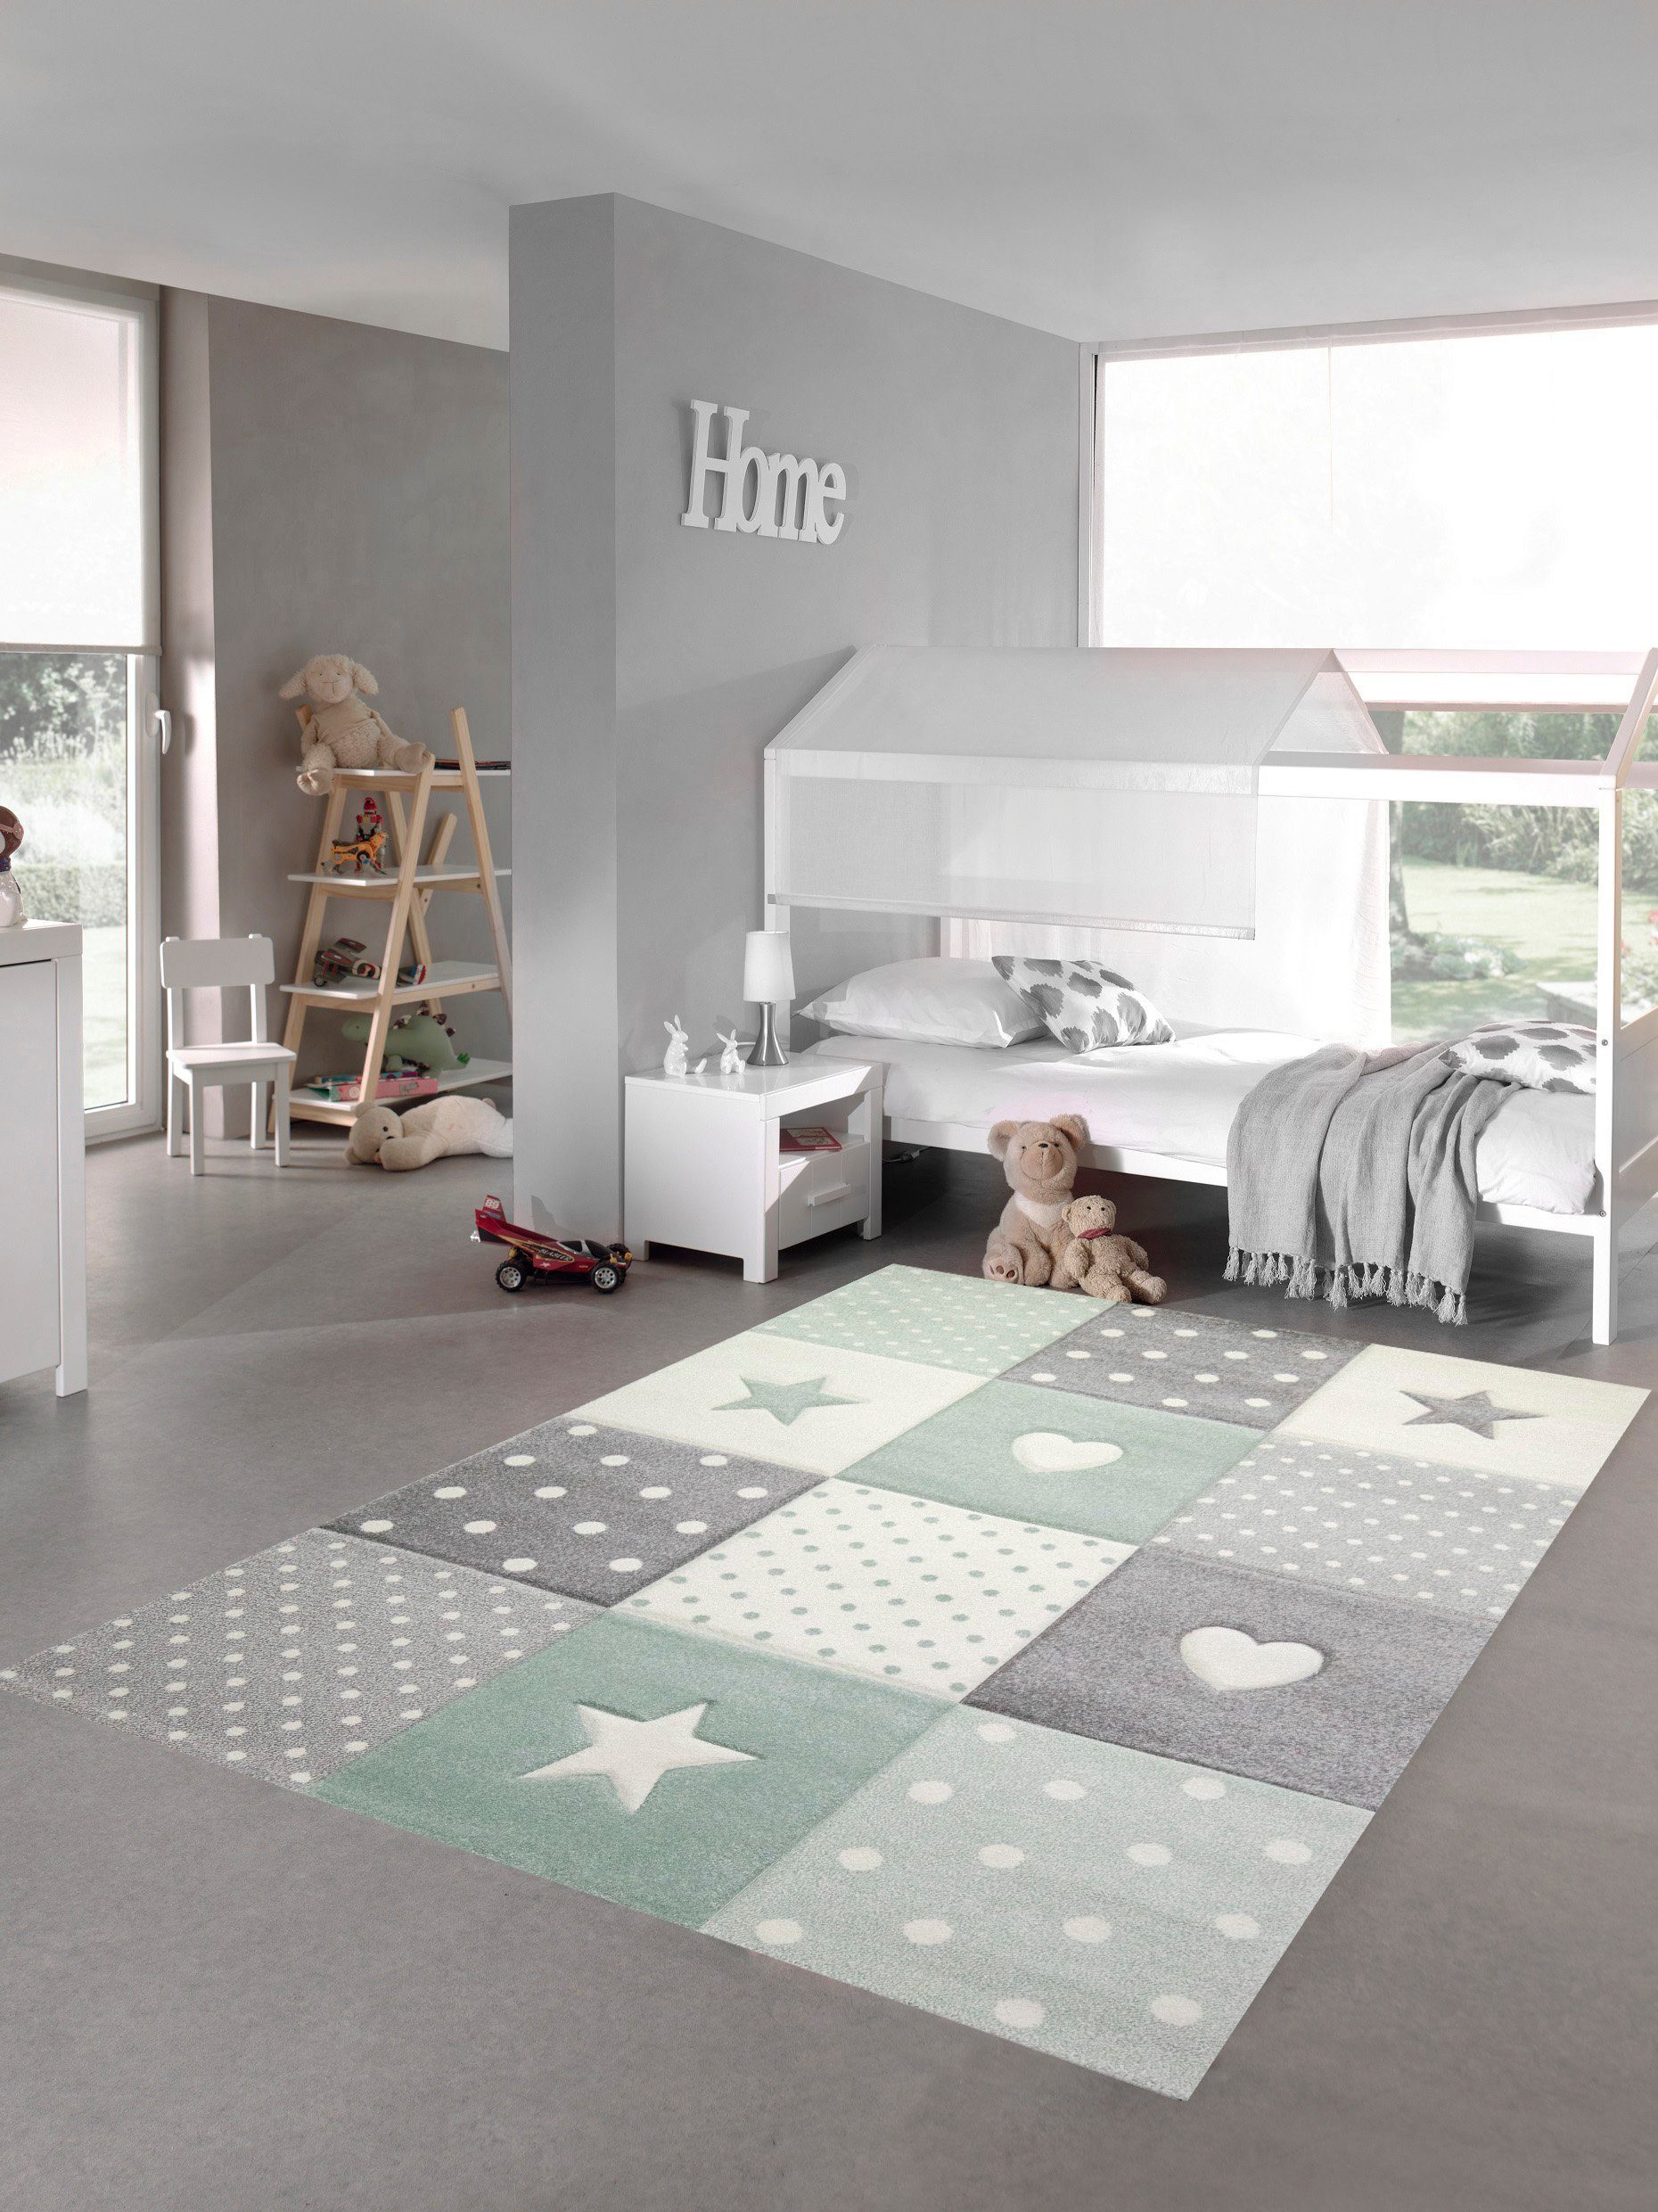 Kinderteppich Kinderzimmer Teppich Spielteppich Herz Stern Punkte Design grün grau creme, Teppich-Traum, rechteckig, Höhe: 13 mm